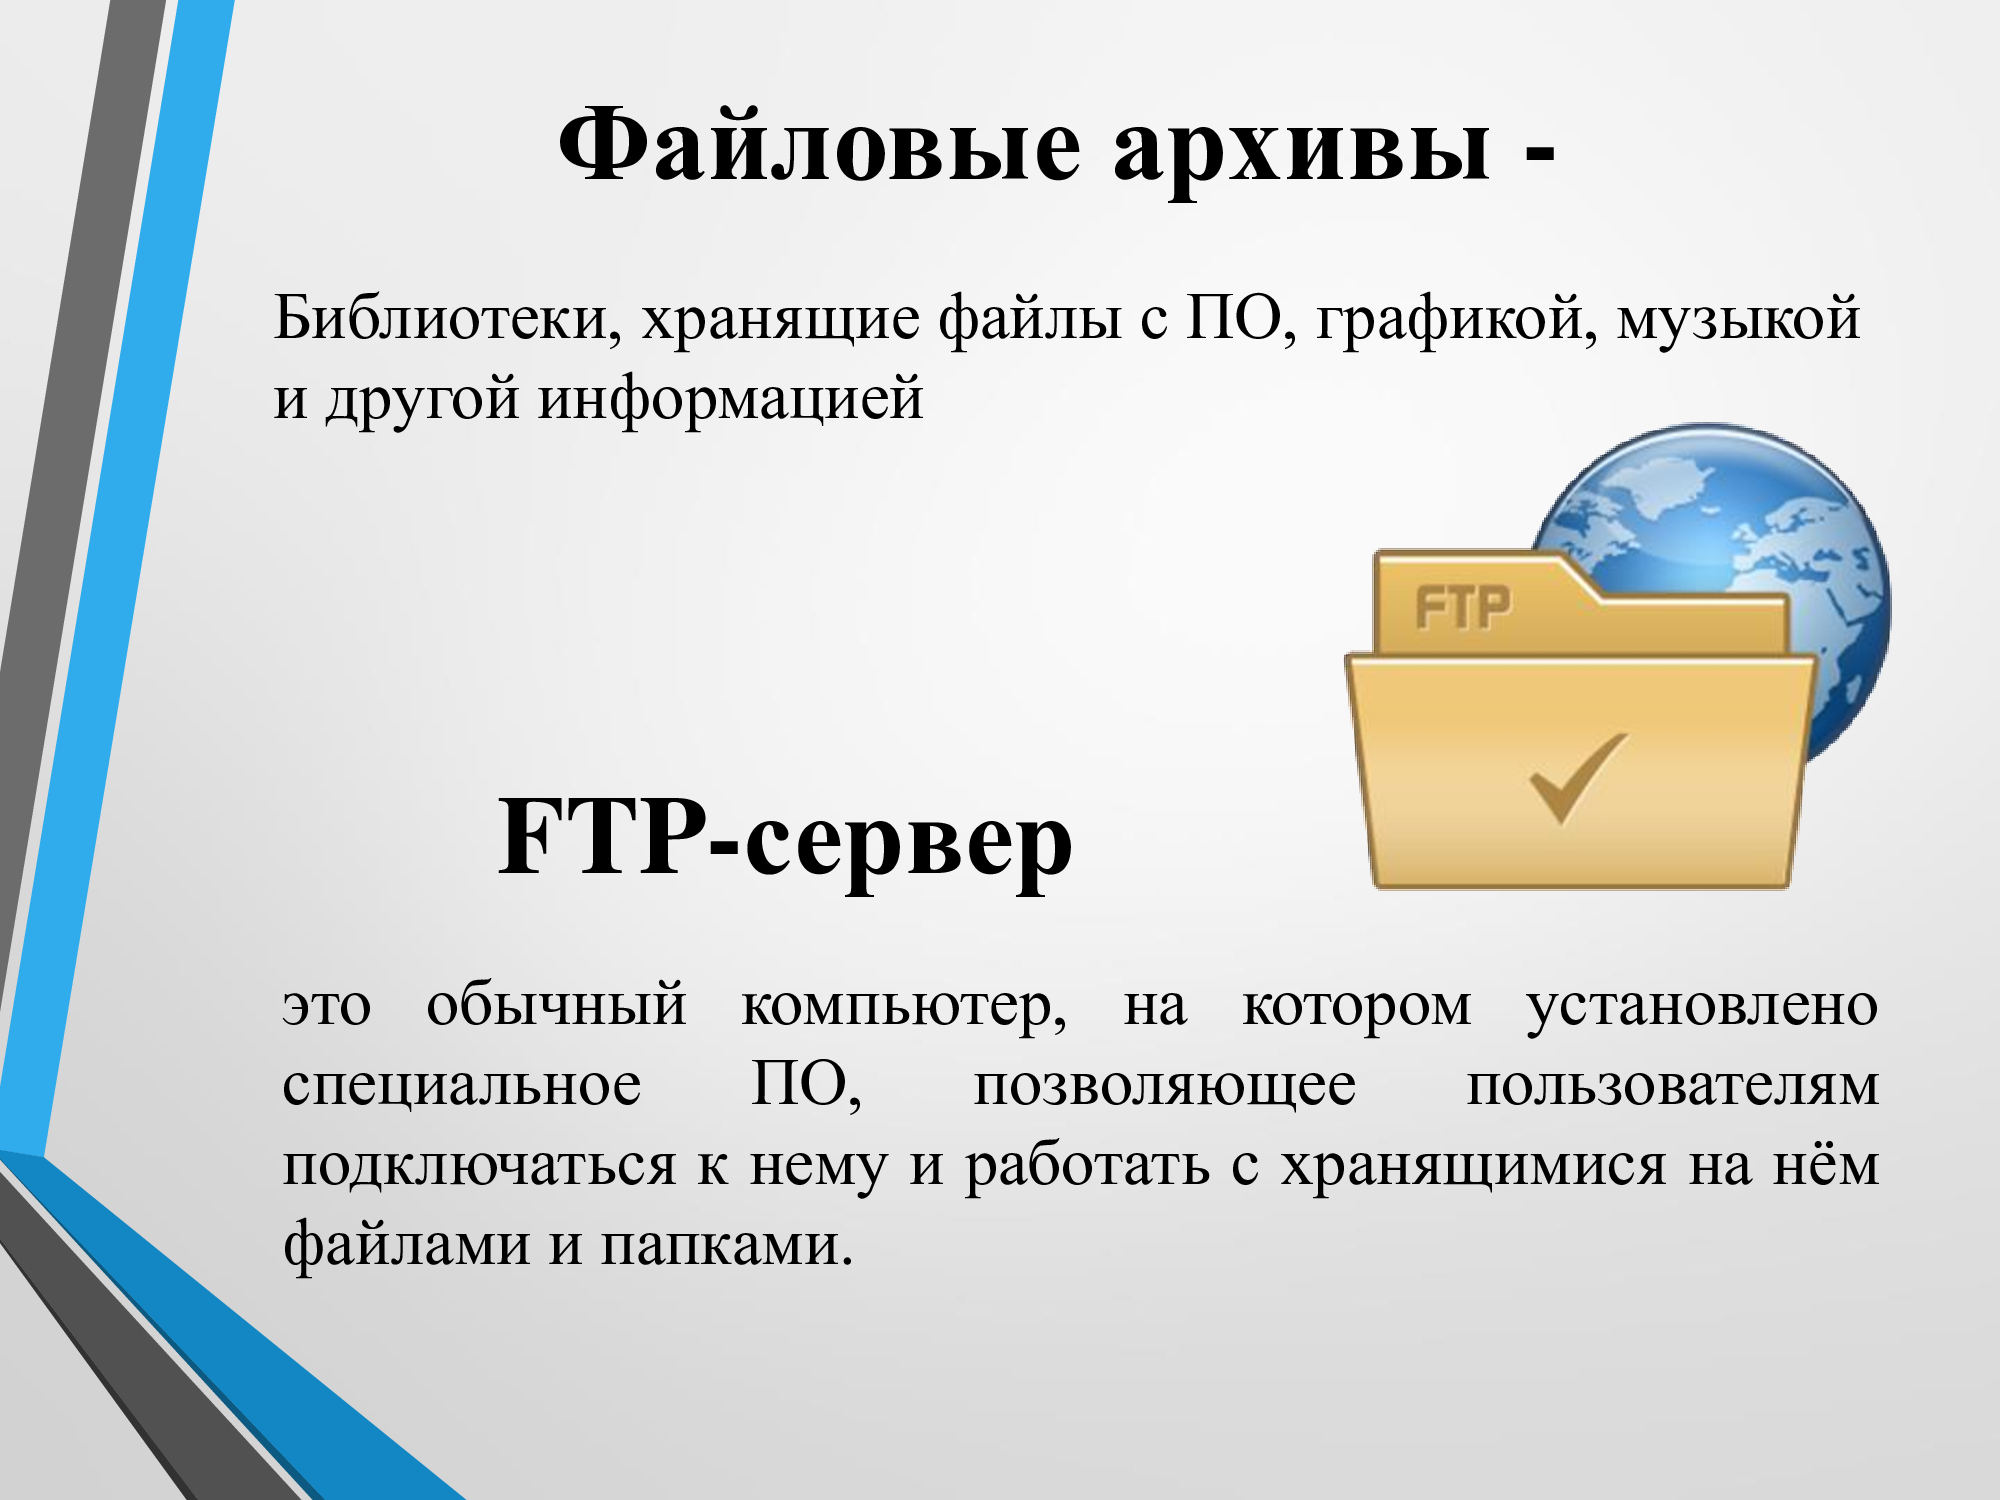 Получить информацию о файле. Файловые архивы. Презентация на тему файловые архивы. Файловые архивы это в информатике. Файловые архивы FTP.